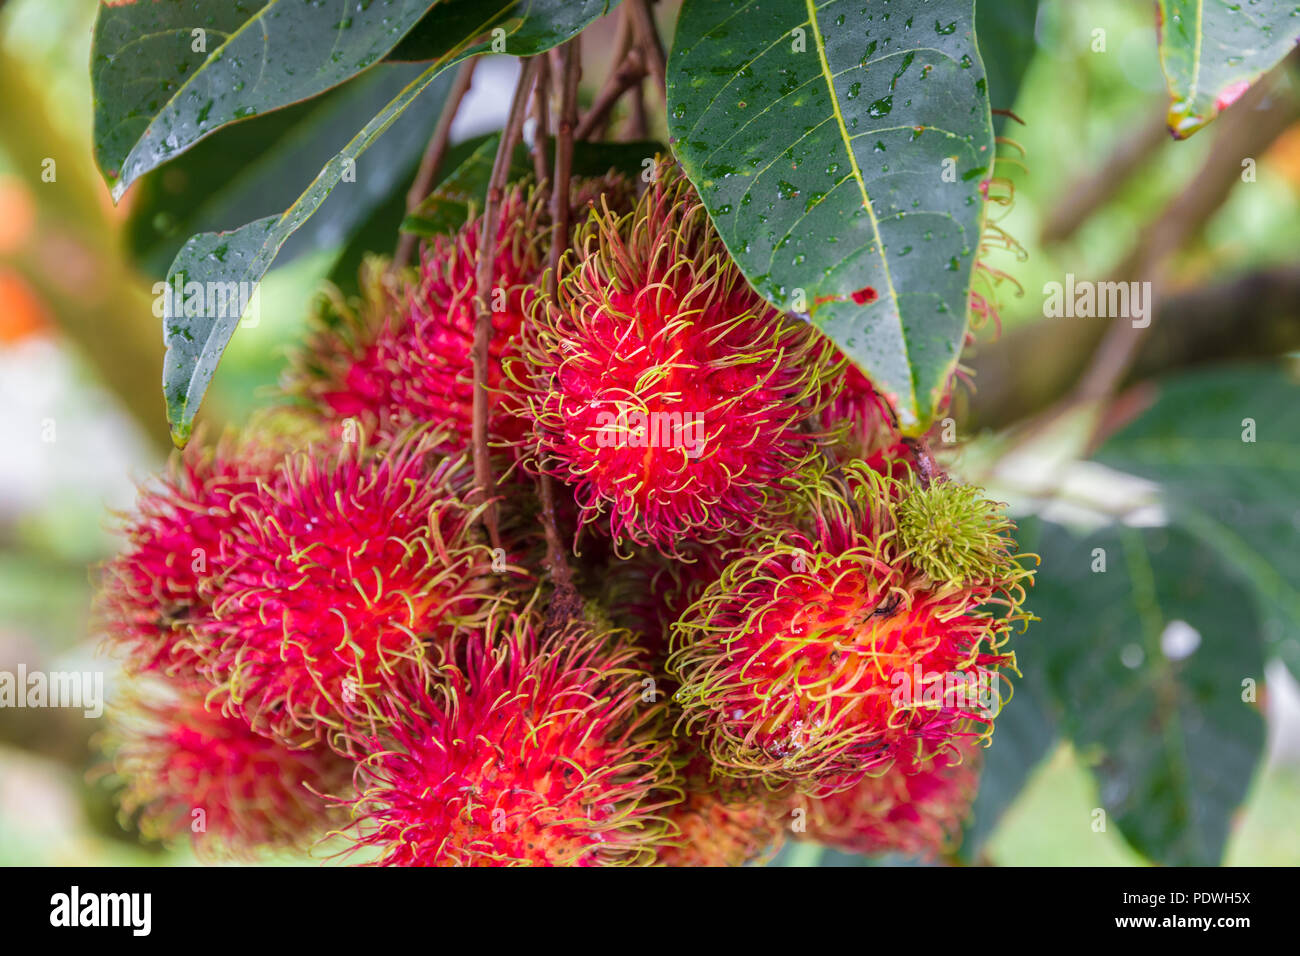 Schöne Nahaufnahme von einem Cluster von organischen reife rote Früchte Rambutan (Nephelium lappaceum) mit ihren haarigen Ausstülpungen, Hängen an einem Baum in Malaysia. Stockfoto